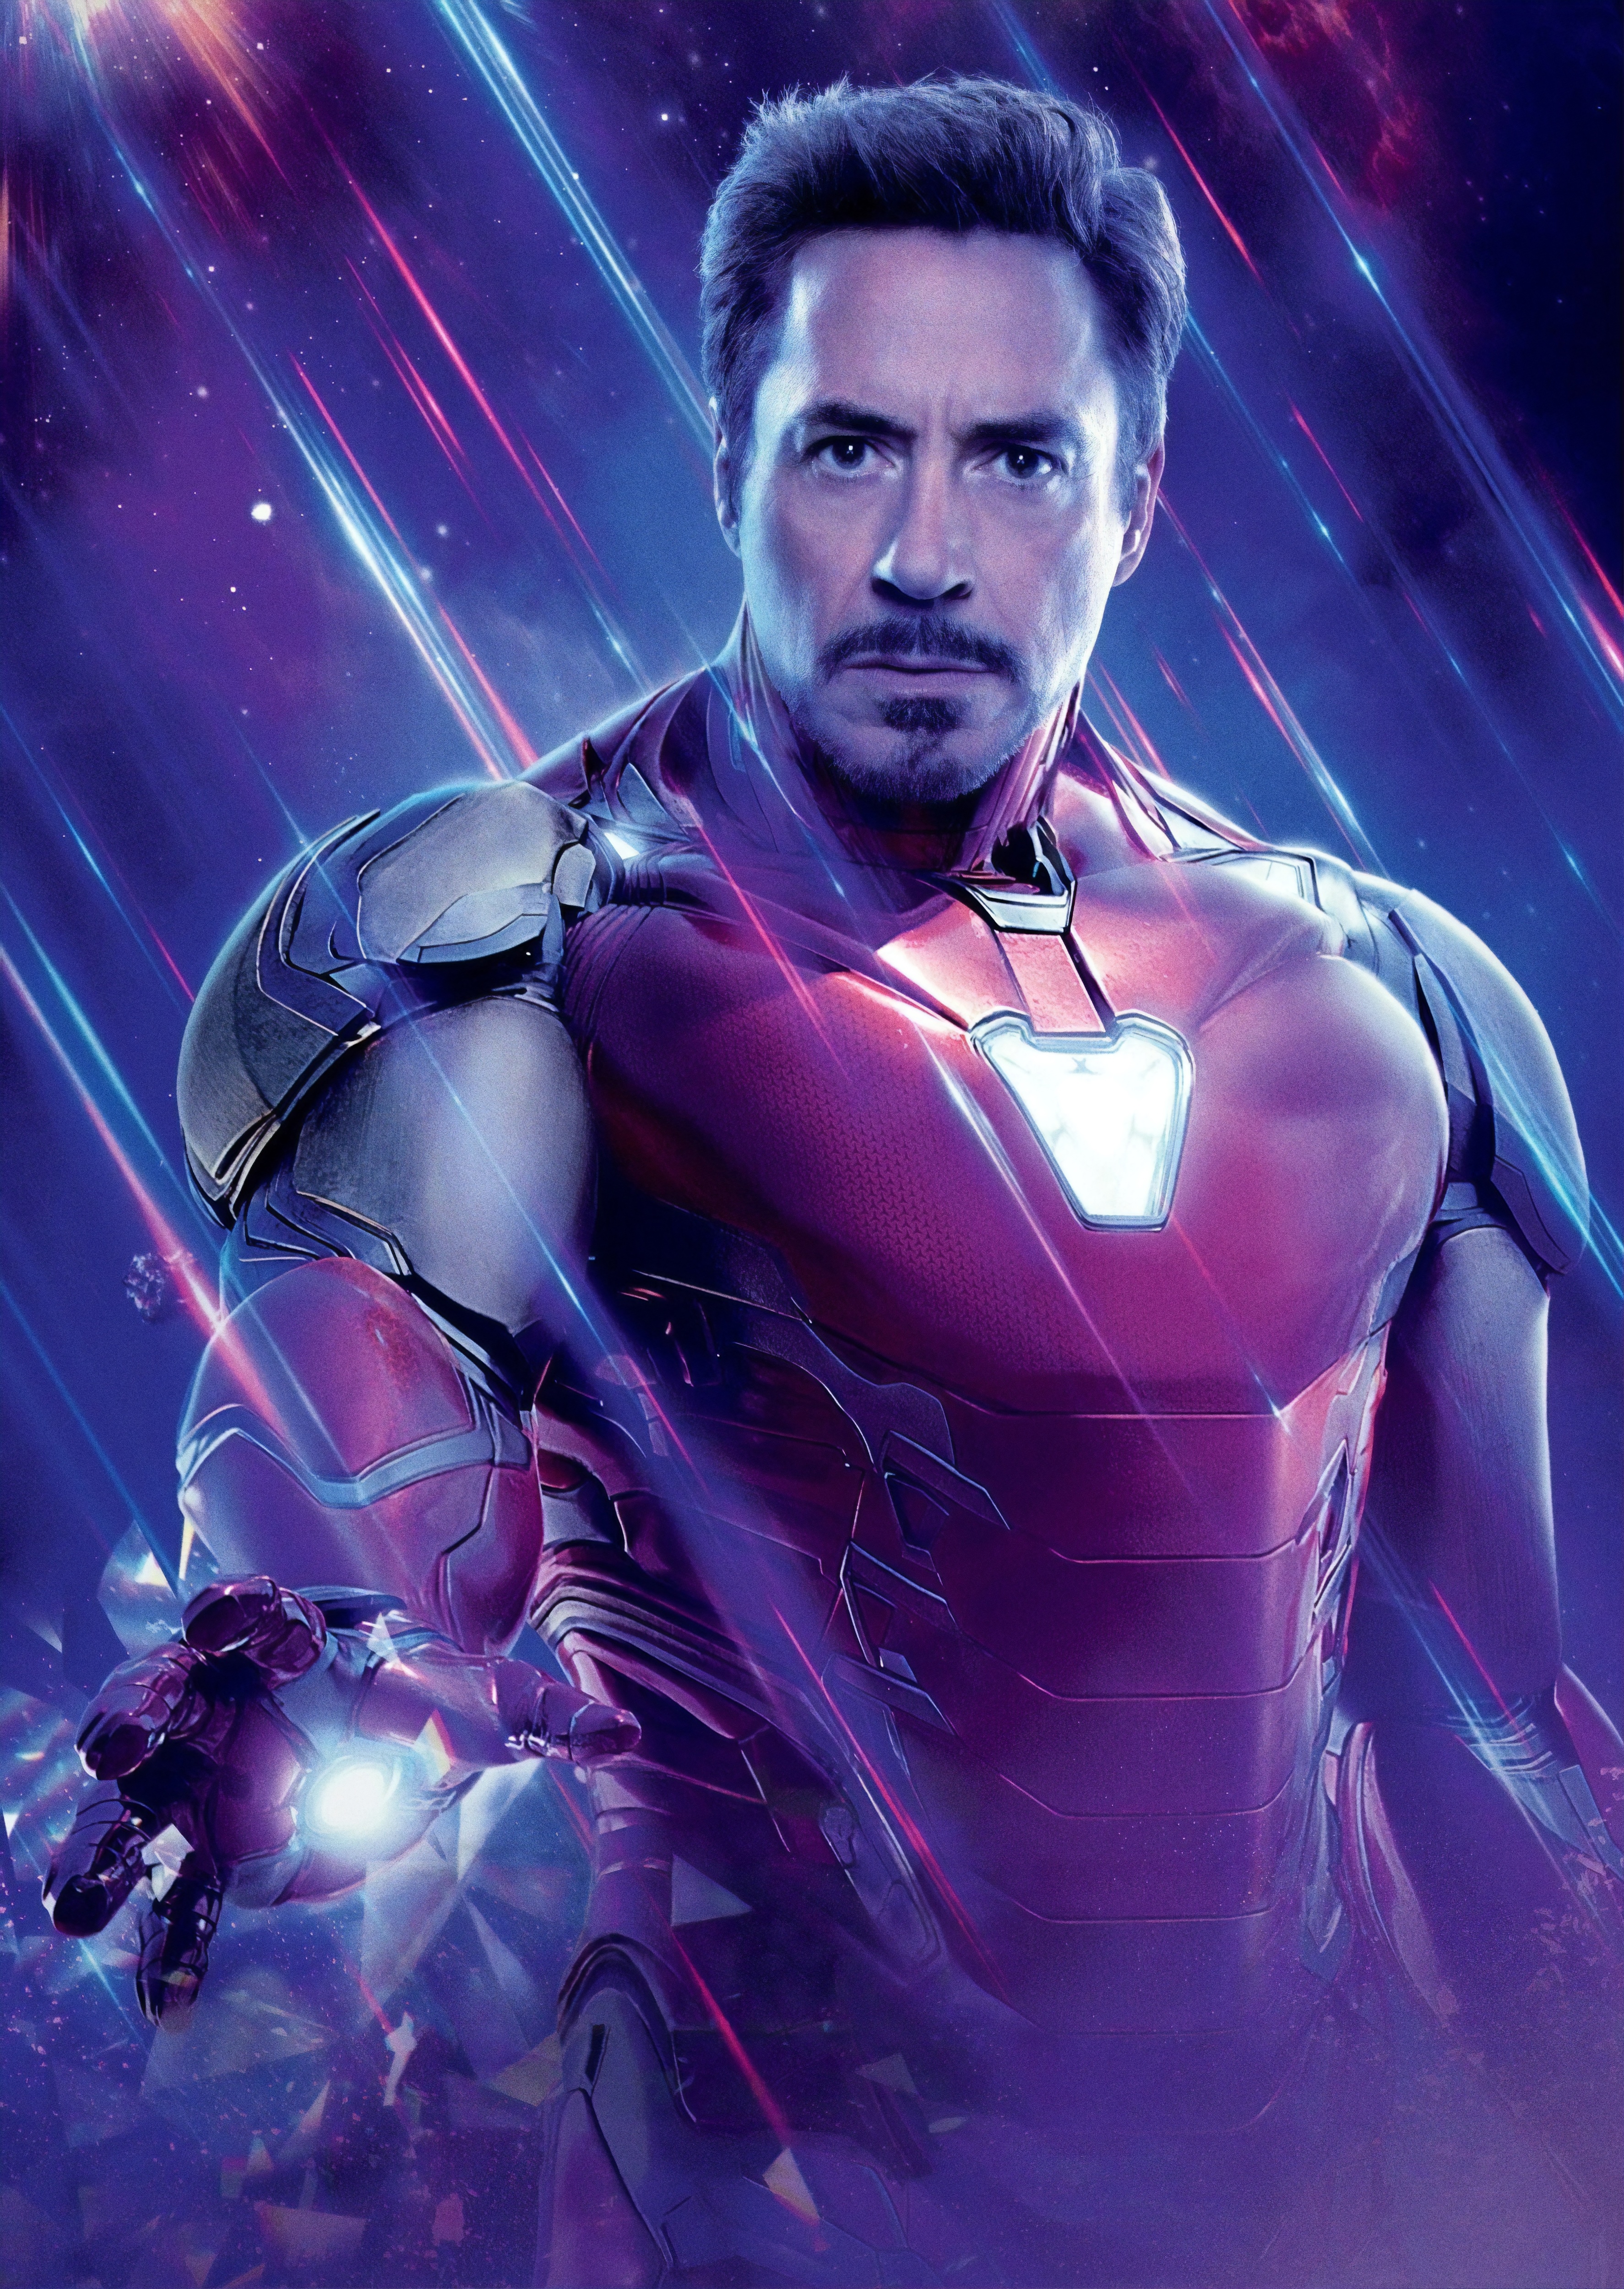 Pics Of Iron Man - KibrisPDR